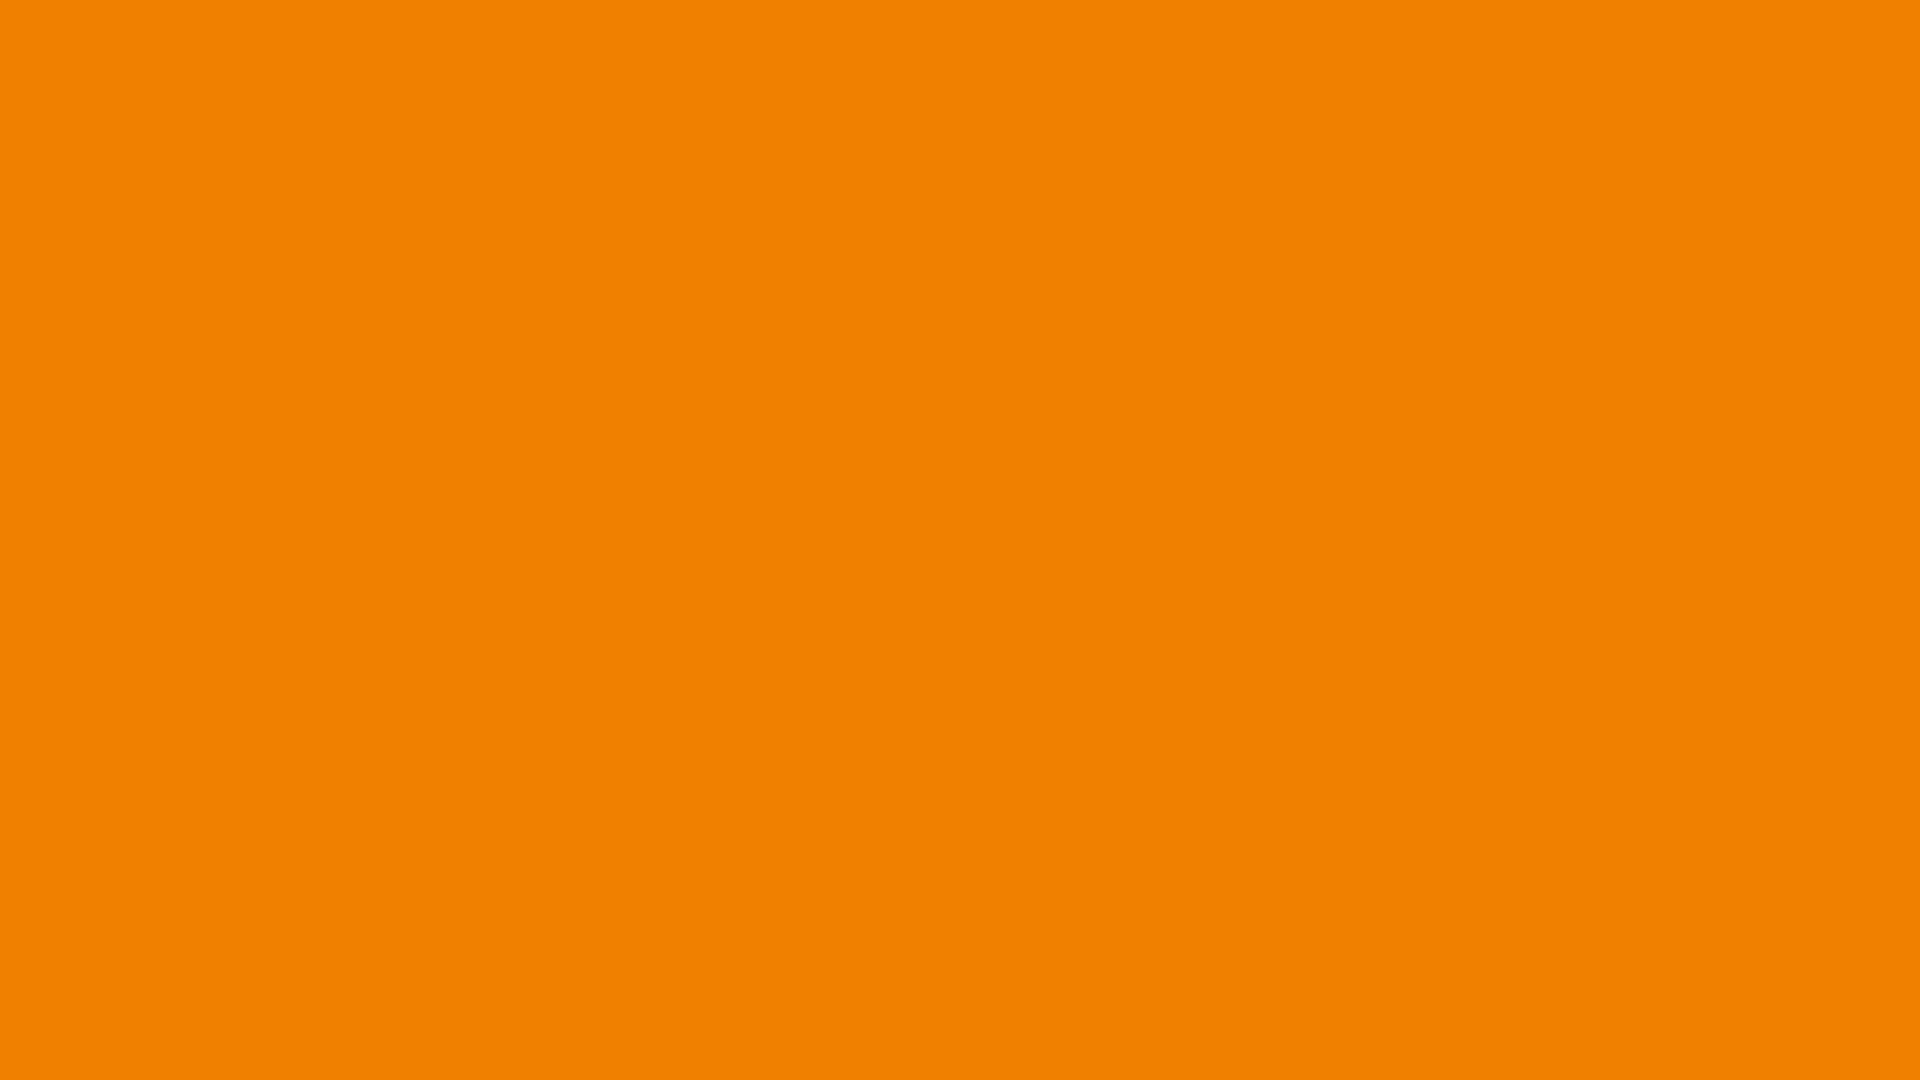 Khi nghĩ đến màu sắc đỏ cam, chúng ta nghĩ ngay đến sự nổi bật và quyền lực. Hãy khám phá hình ảnh liên quan và cảm nhận sự hùng mạnh, sức mạnh của gam màu này thông qua mã màu HTML đỏ cam đầy cuốn hút.